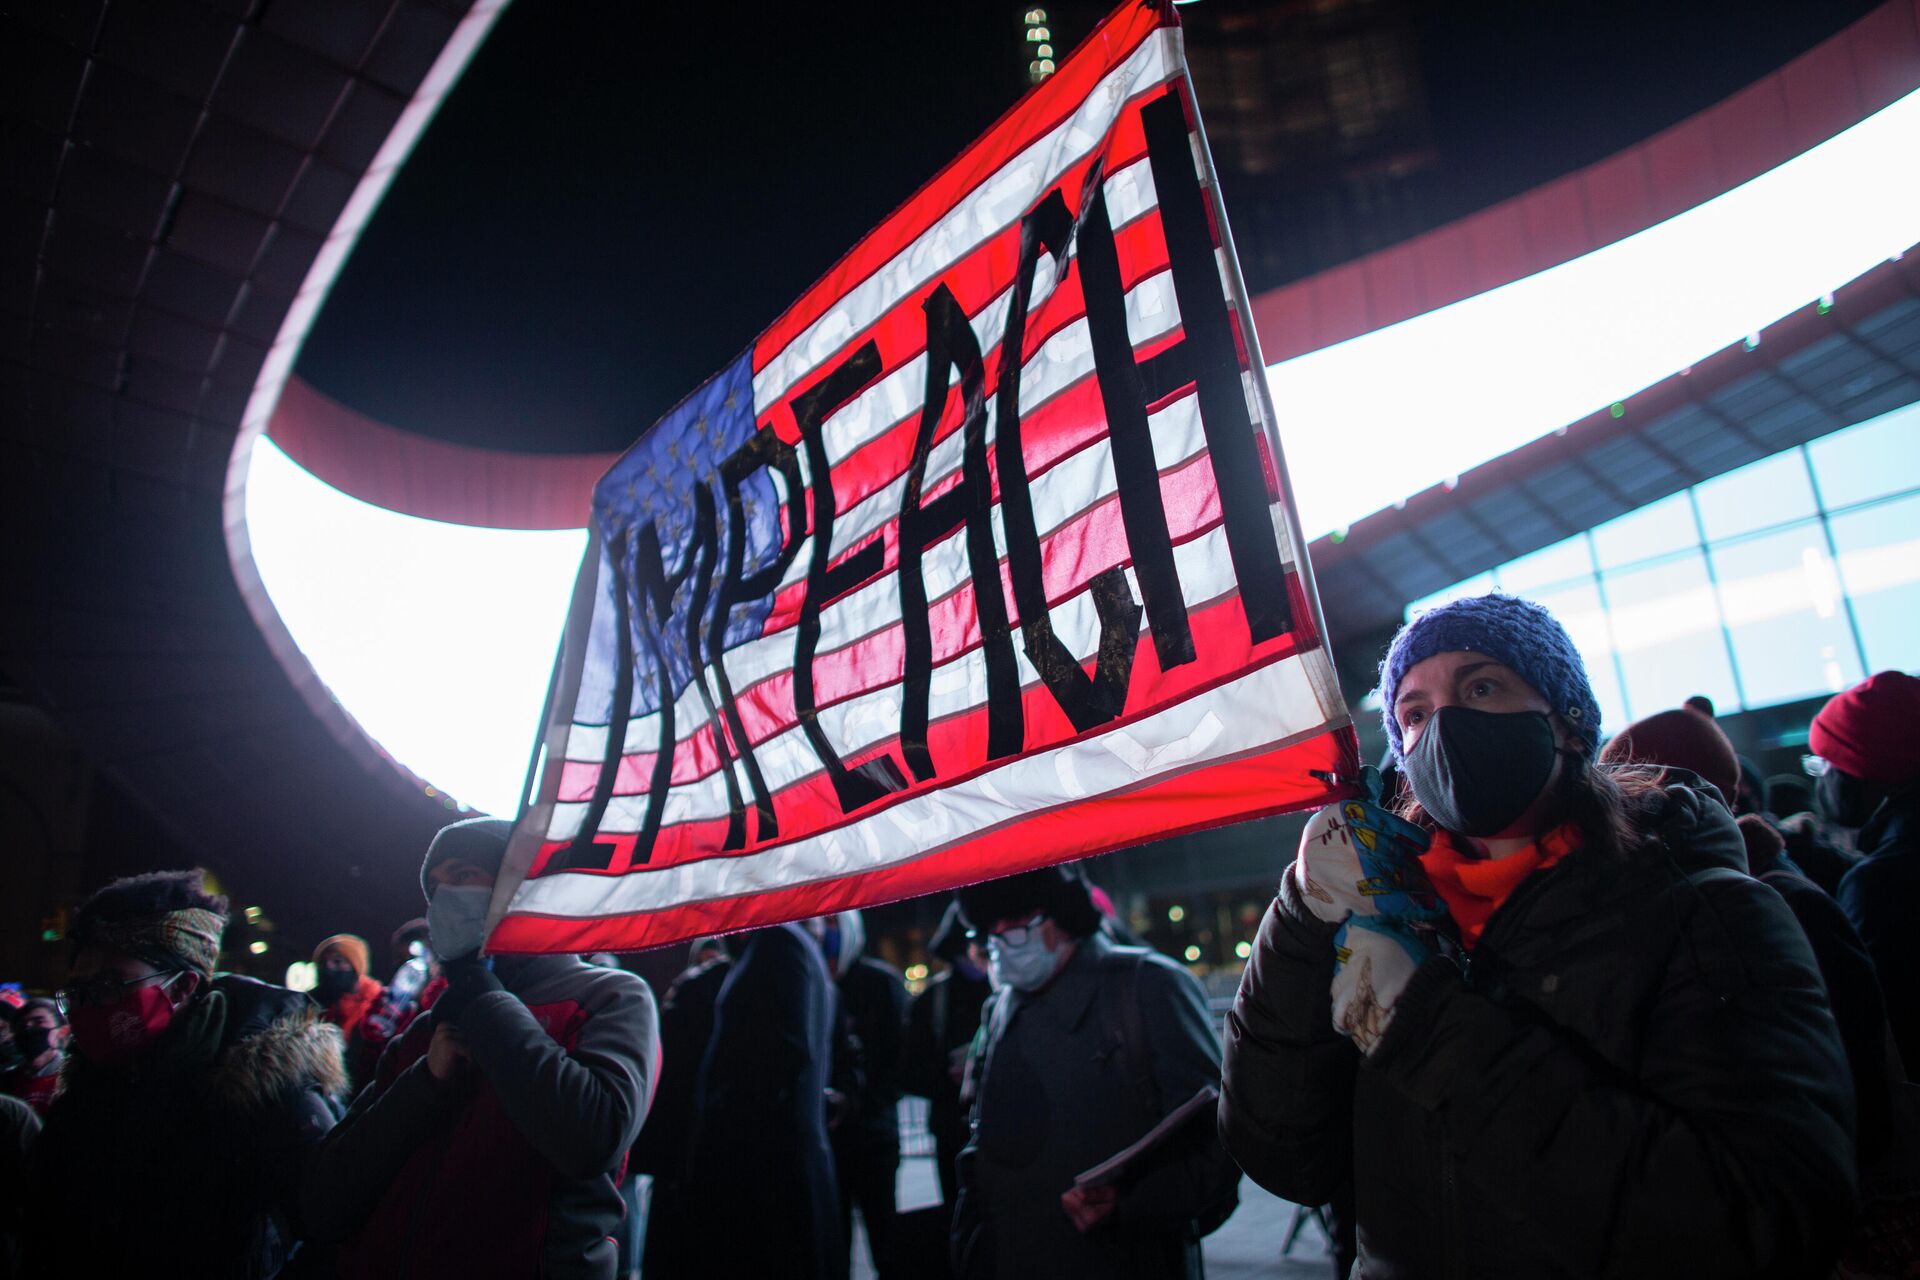 Демонстранты держат плакат с призывом к импичменту президента США Дональда Трампа во время акции протеста у здания Barclays Center в Бруклине, штат Нью-Йорк. 7 января 2021 года - РИА Новости, 1920, 13.01.2021